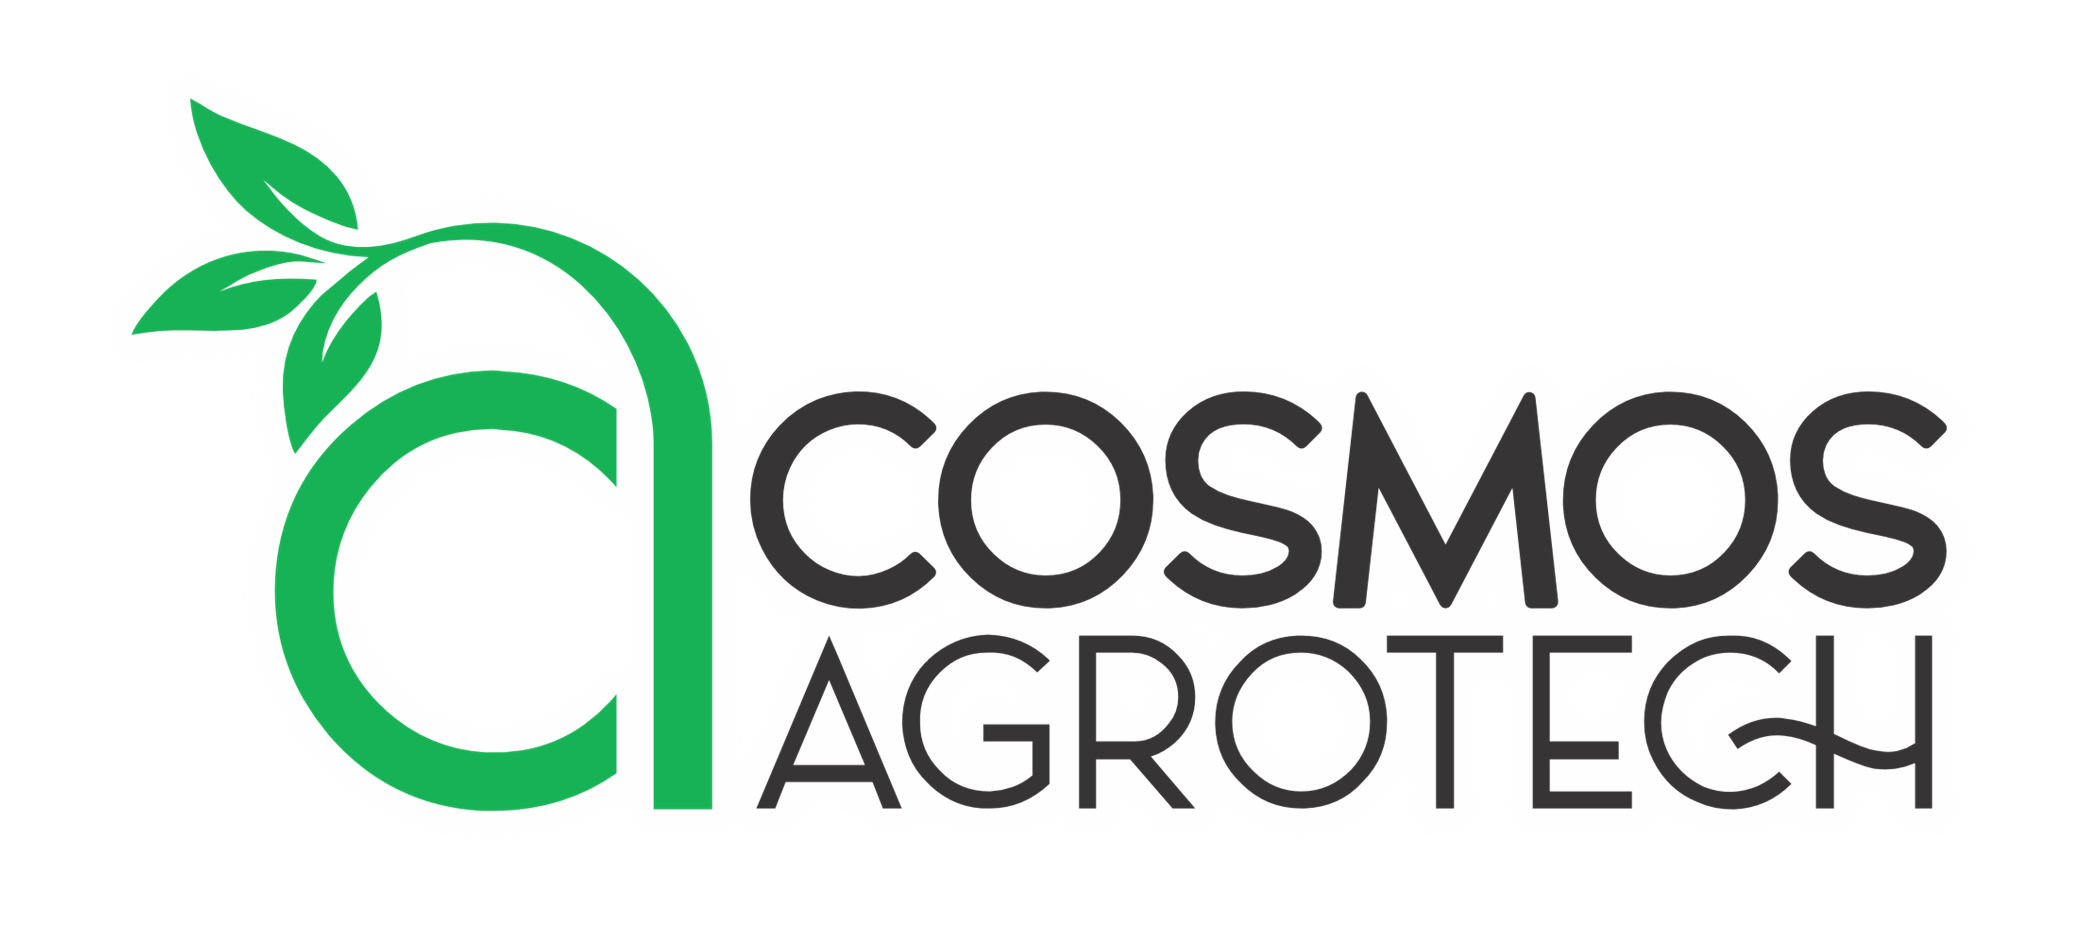 Cosmos Agrotech